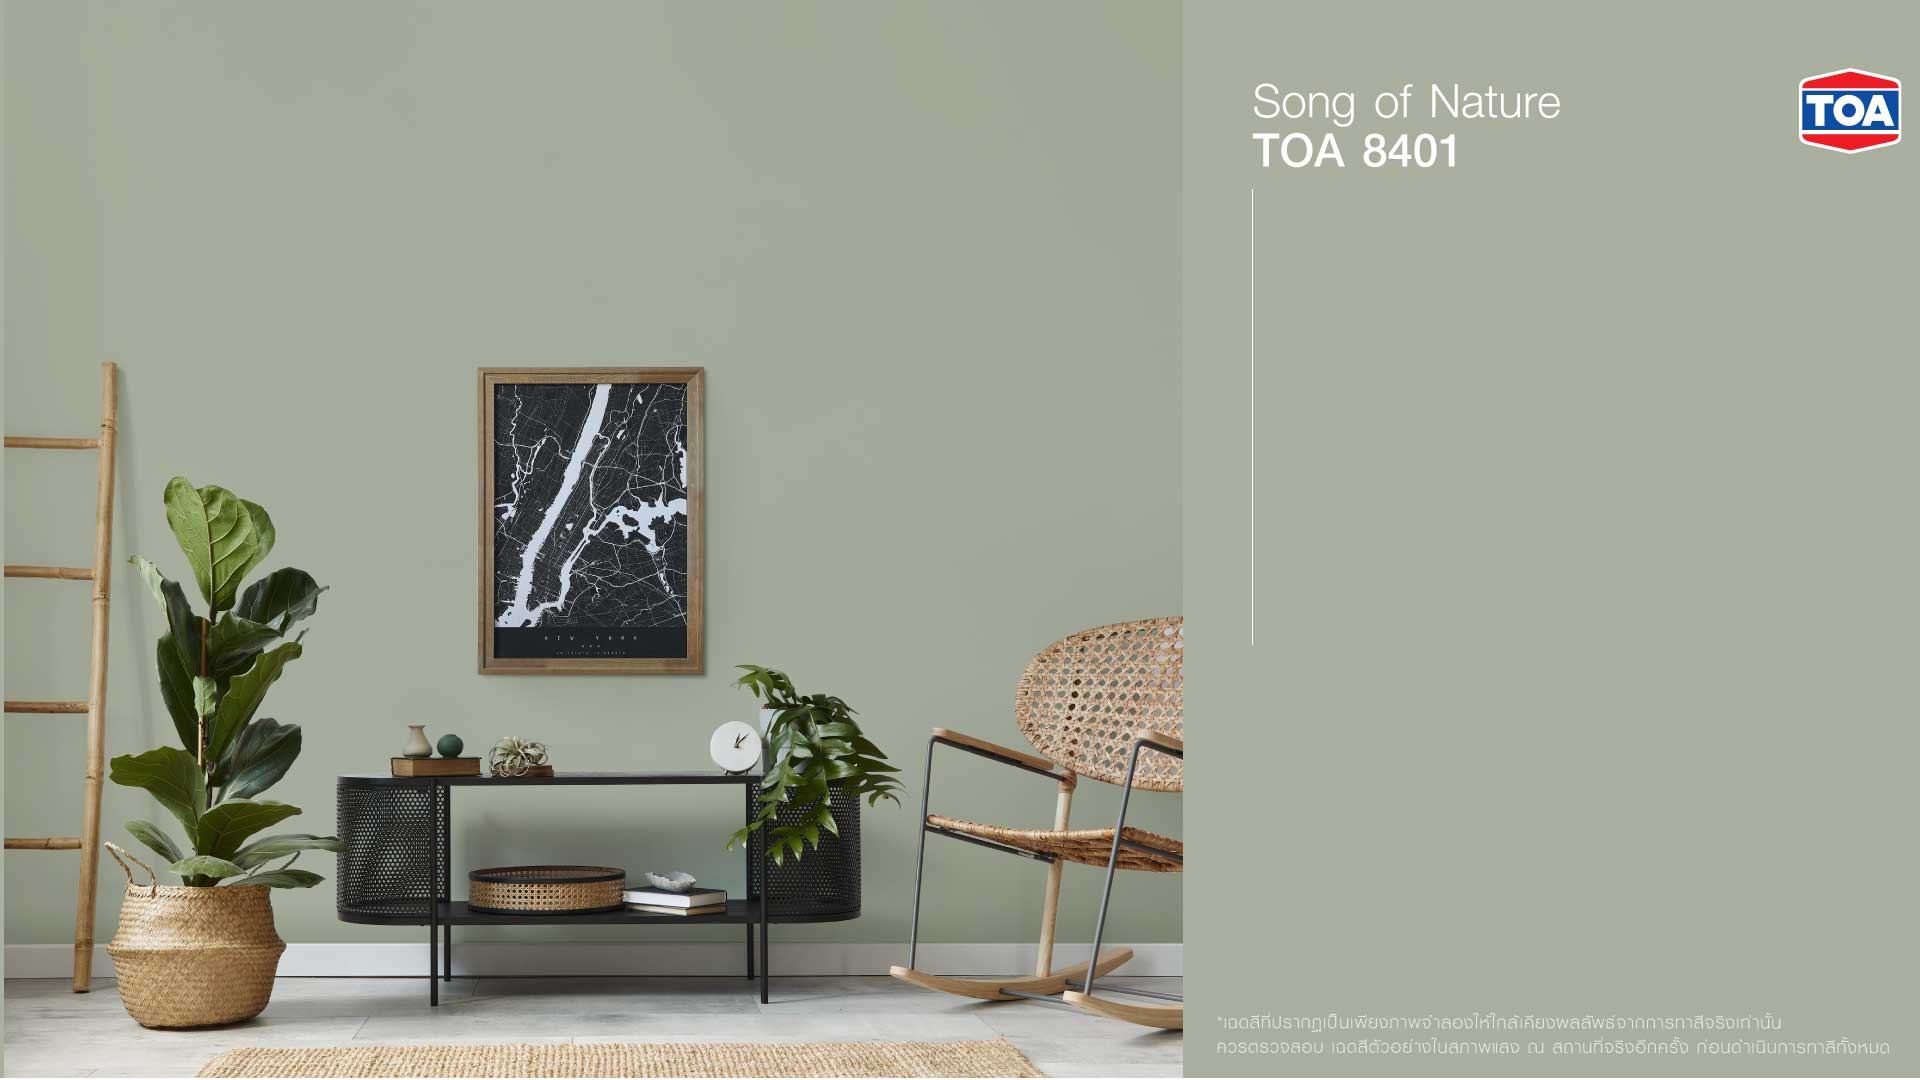 ตัวอย่างสีทาบ้านภายใน เฉดสีเขียวพาสเทล โทนธรรมชาติ TOA 8401